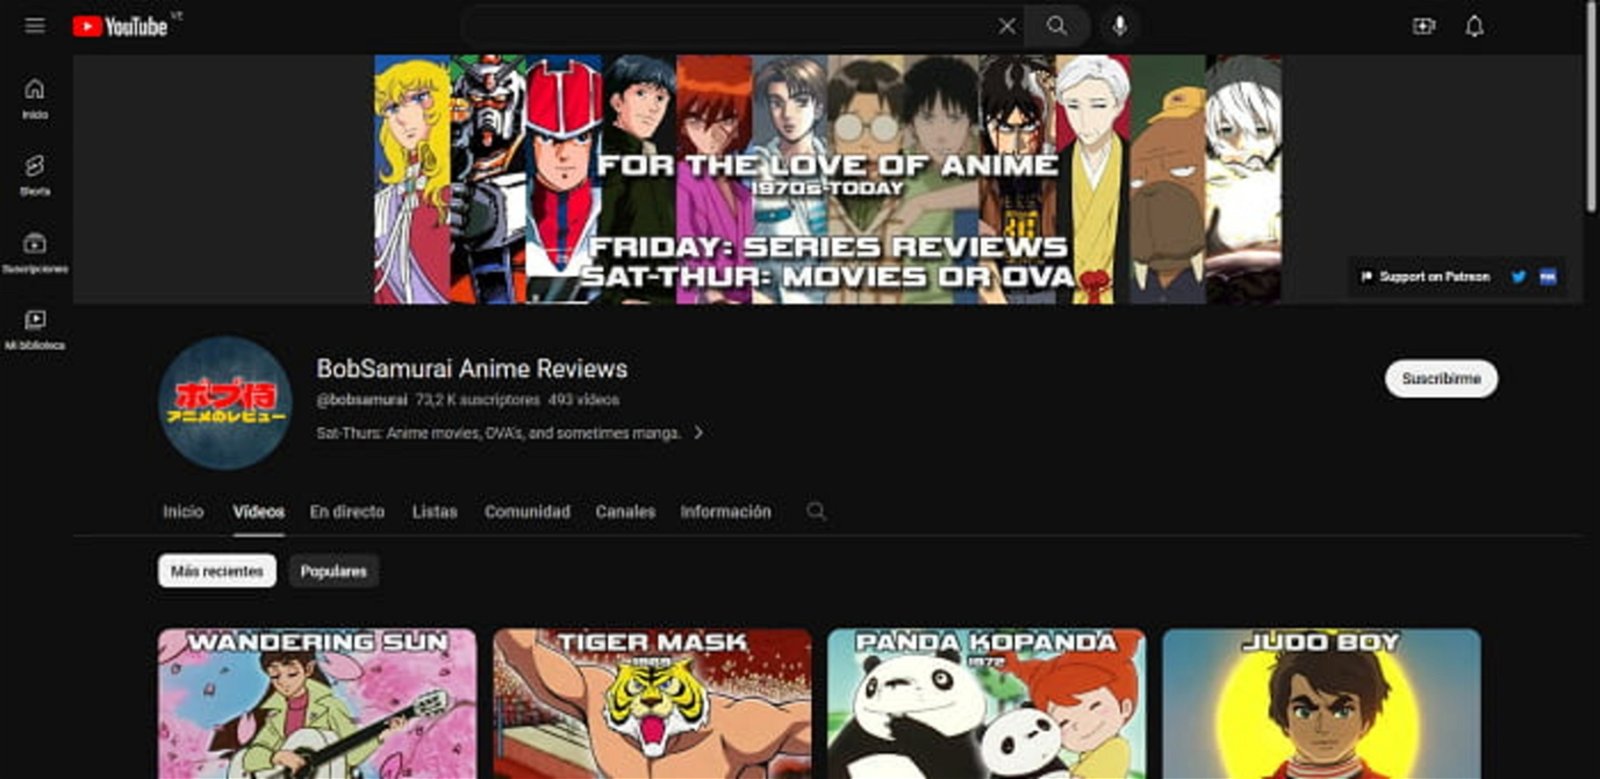 BobSamurai Anime Reviews, si bien es menos conocido, también es una muy buena opción en cuanto a canales de Youtube de anime